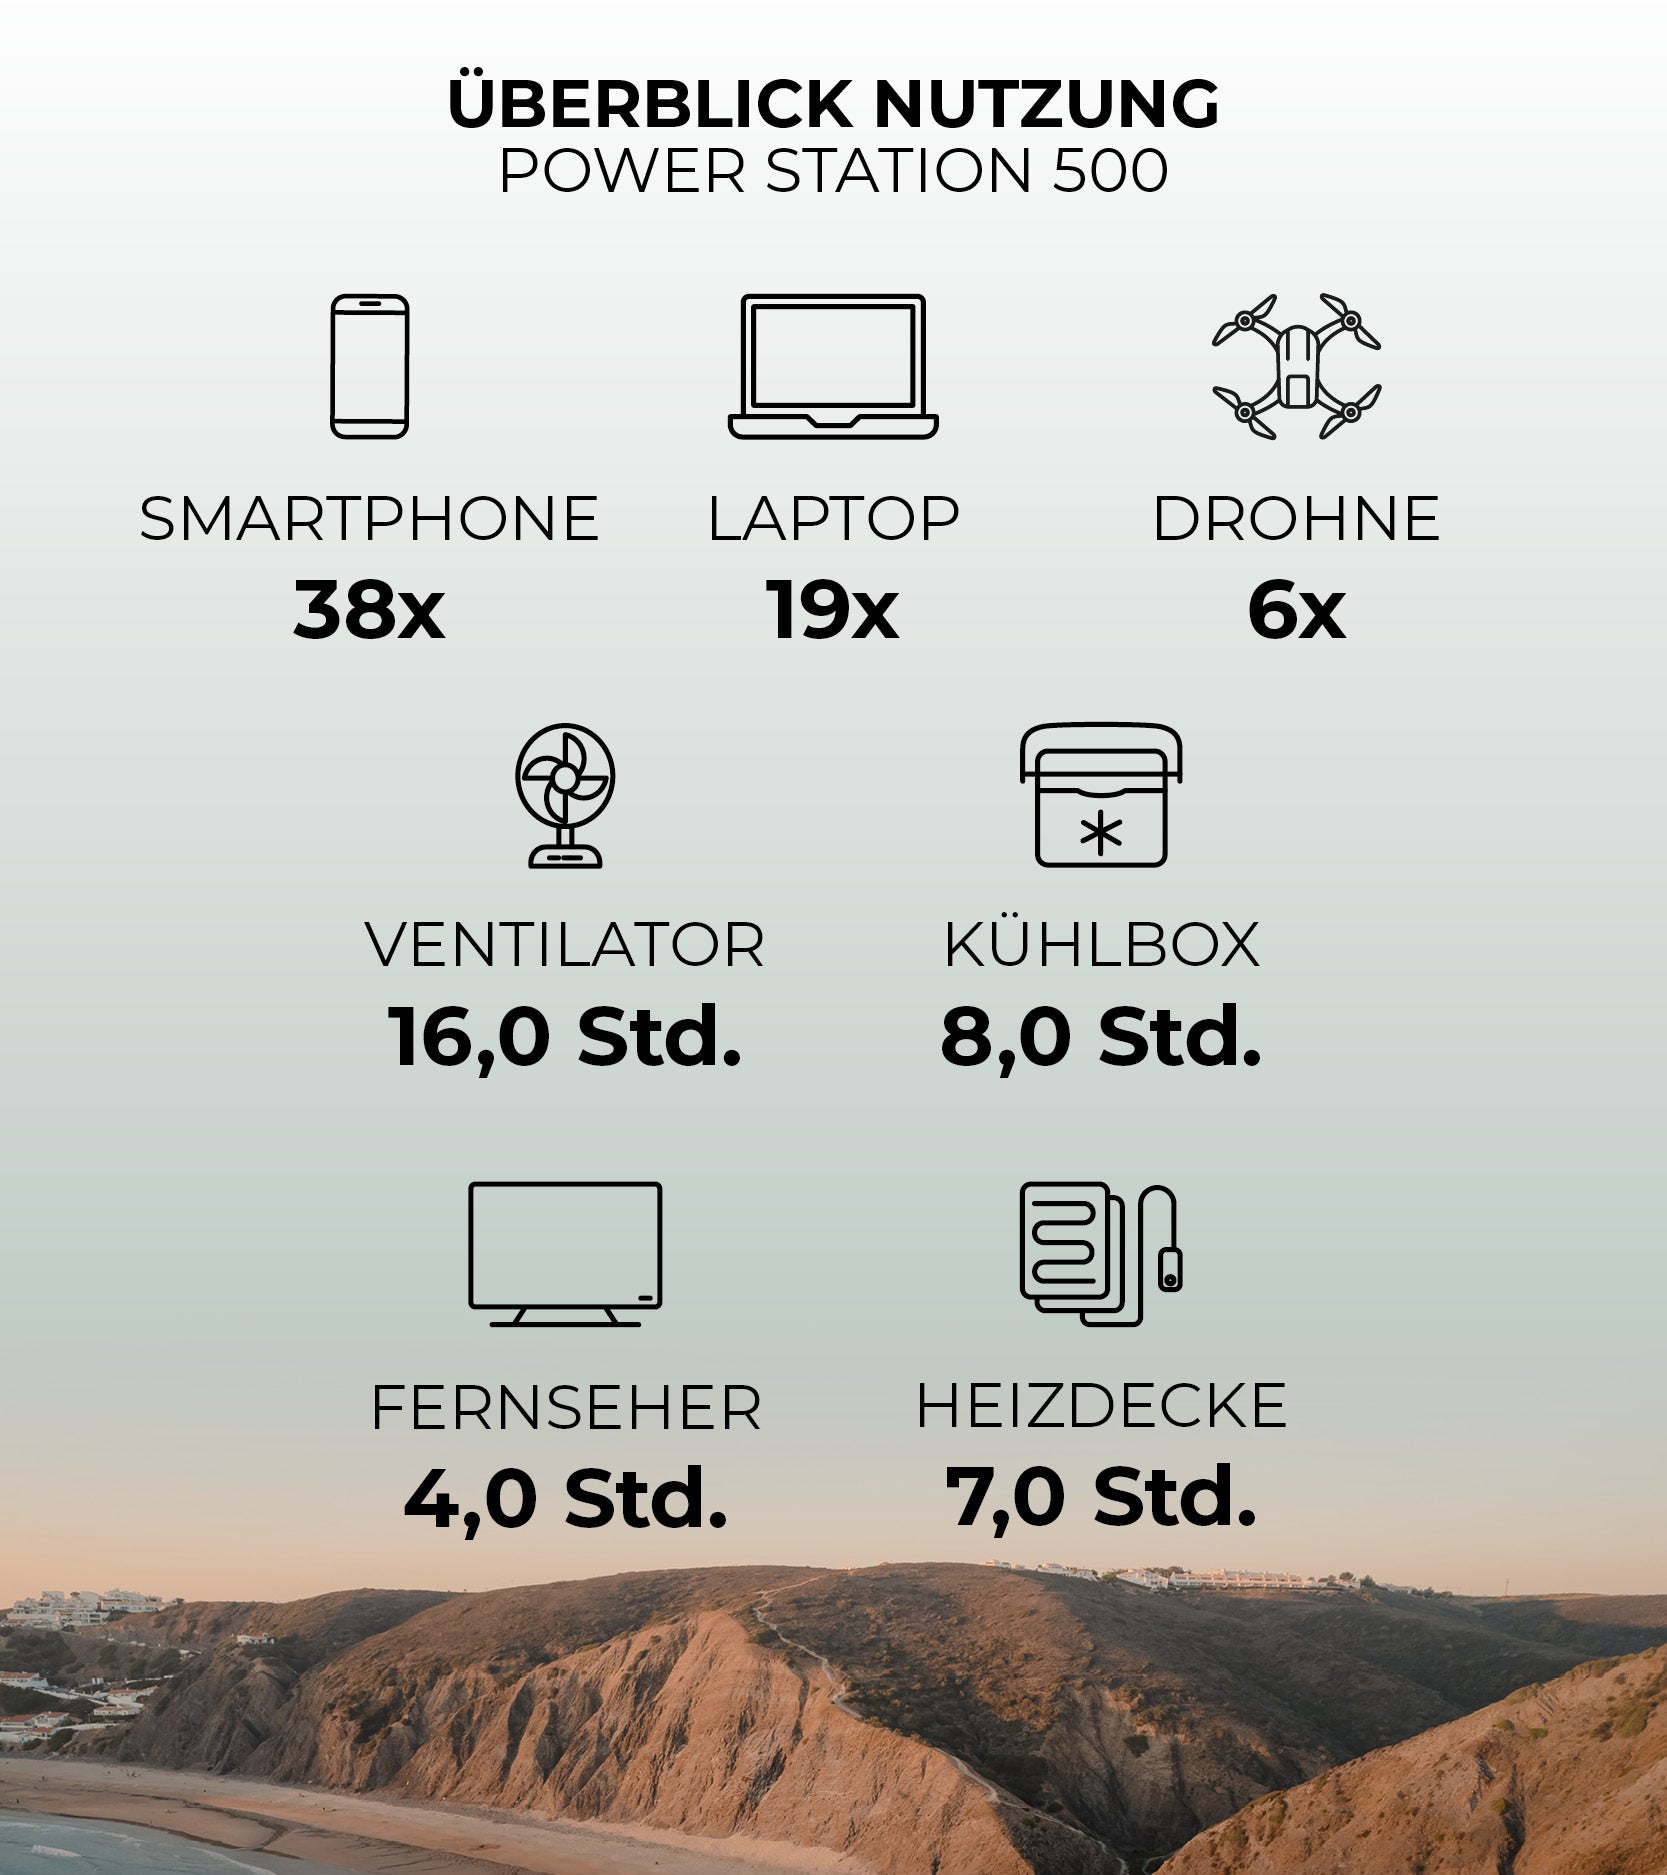 Überblick der Ladenutzung der Rollei Power Station 500 - Smartphone bis zu 38 mal laden, Laptop bis zu 19x laden